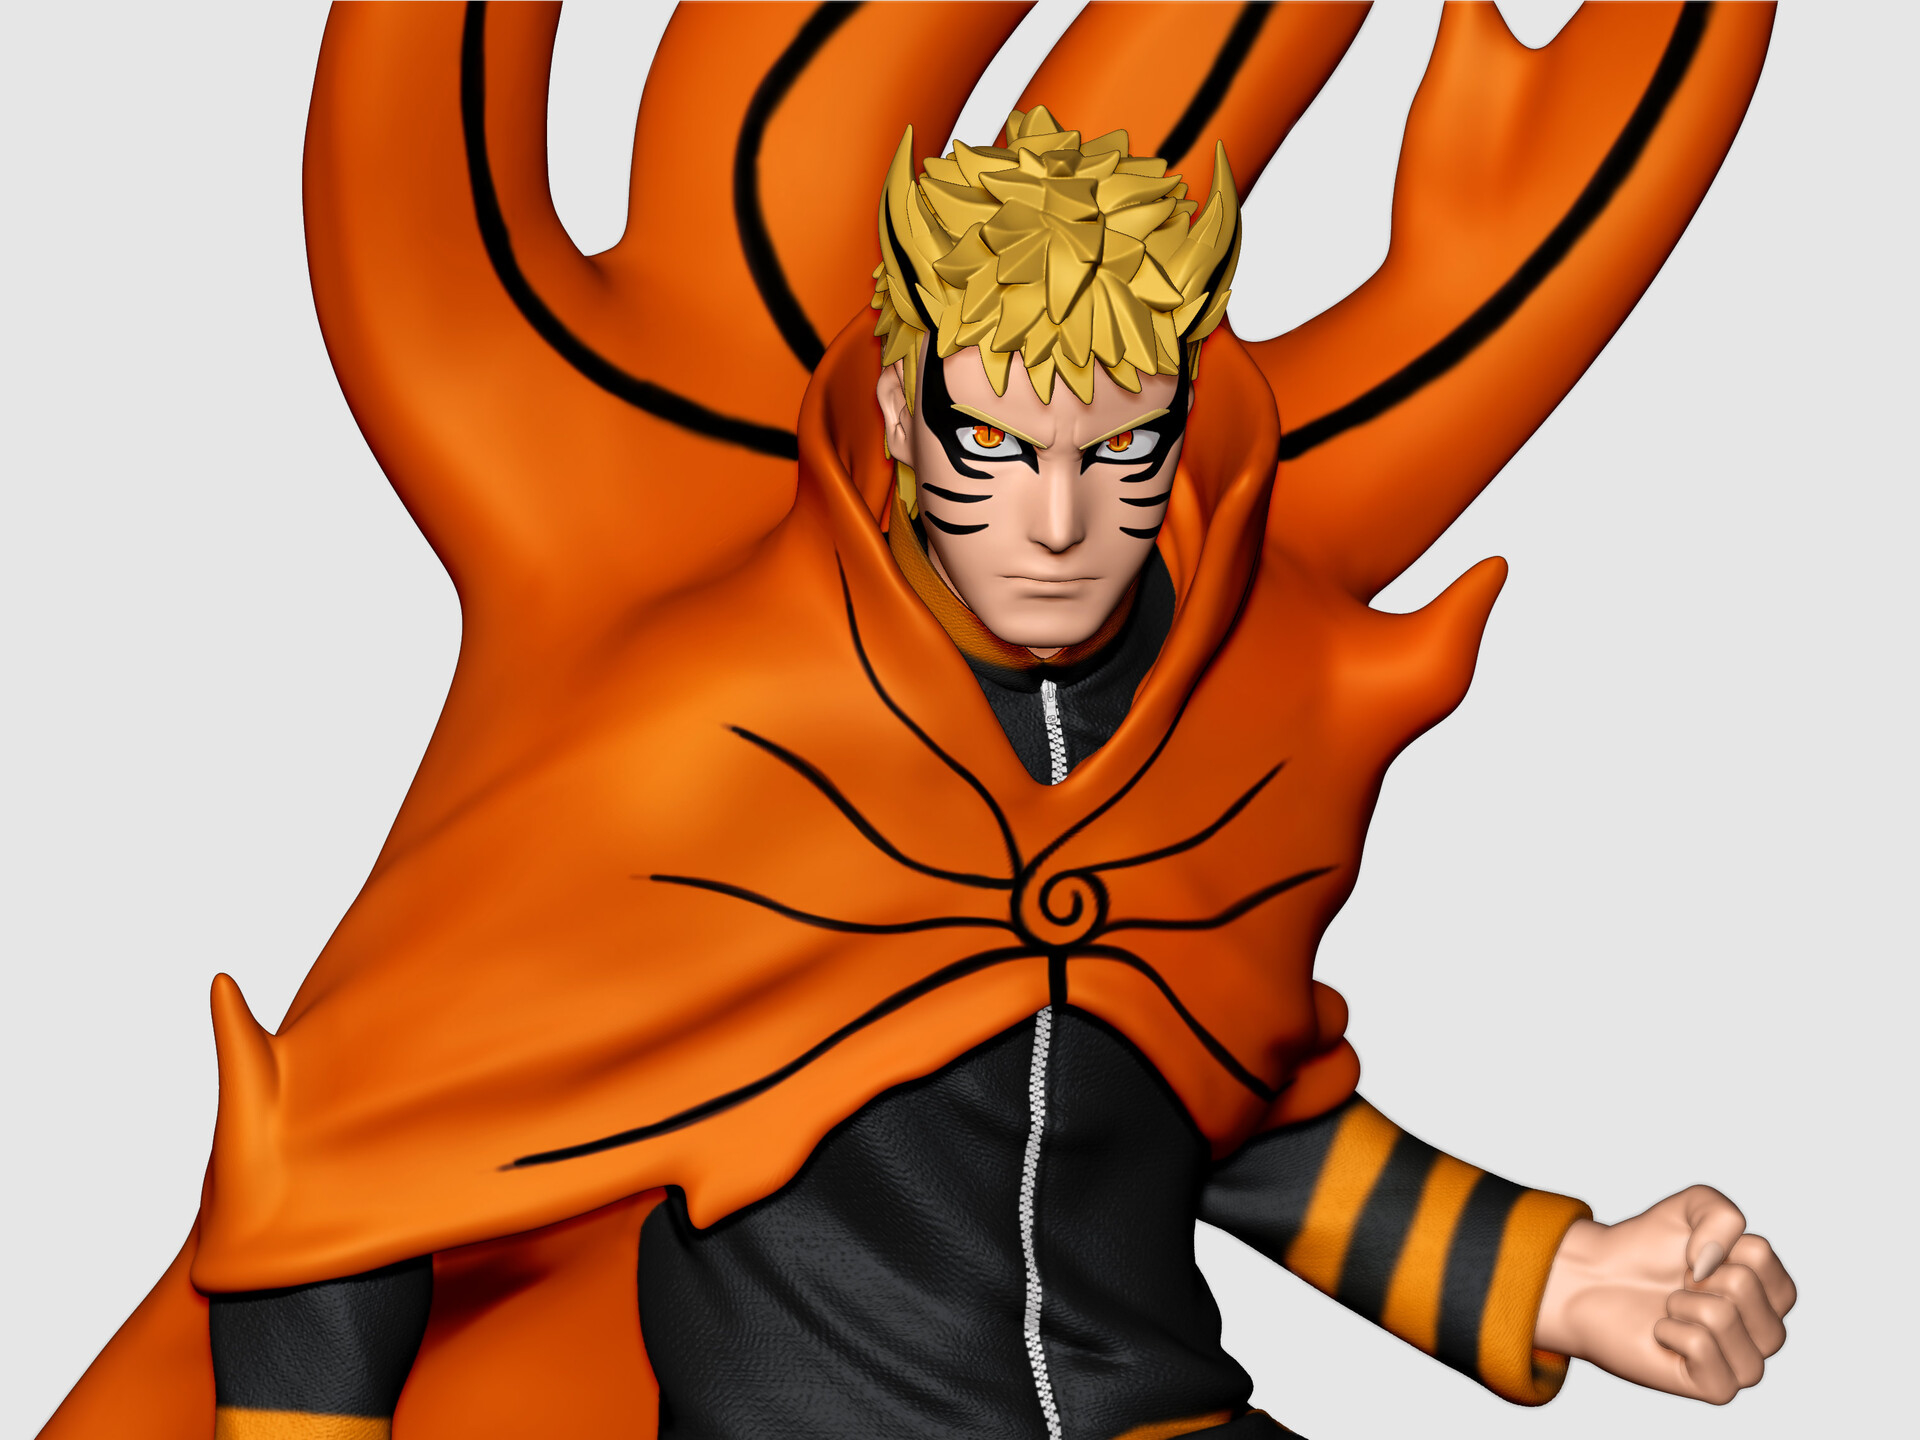 Free download wallpaper Anime, Naruto, Naruto Uzumaki, Boruto, Baryon Mode (Naruto) on your PC desktop